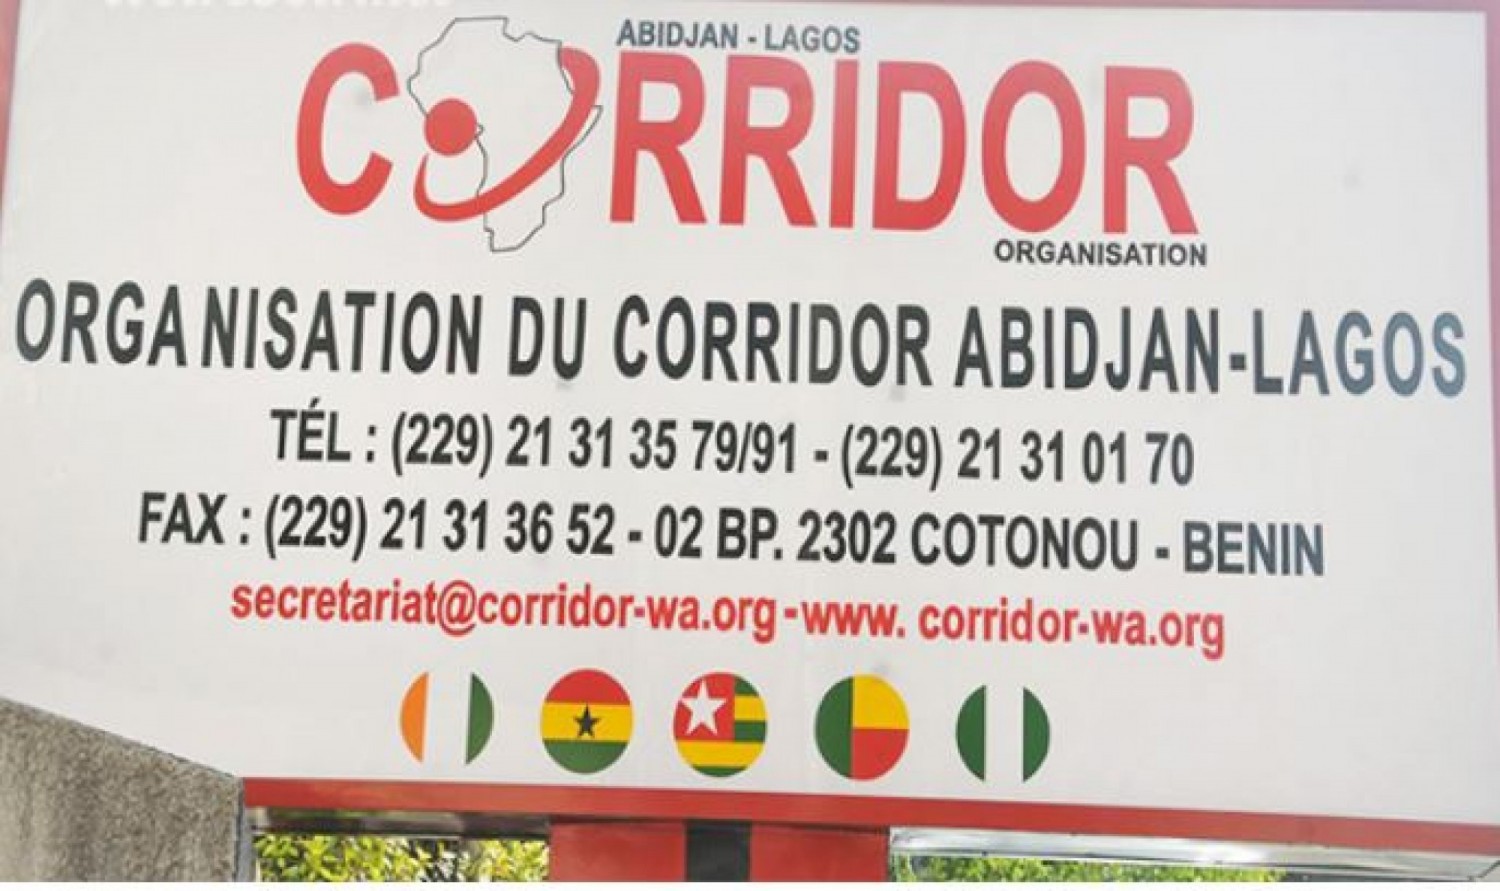 Côte d'Ivoire : Autoroute Abidjan-Lagos, 15,6 milliards de dollars déjà  mobilisés pour ce projet majeur qui sera exécuté sur une période de 4 à 6 ans